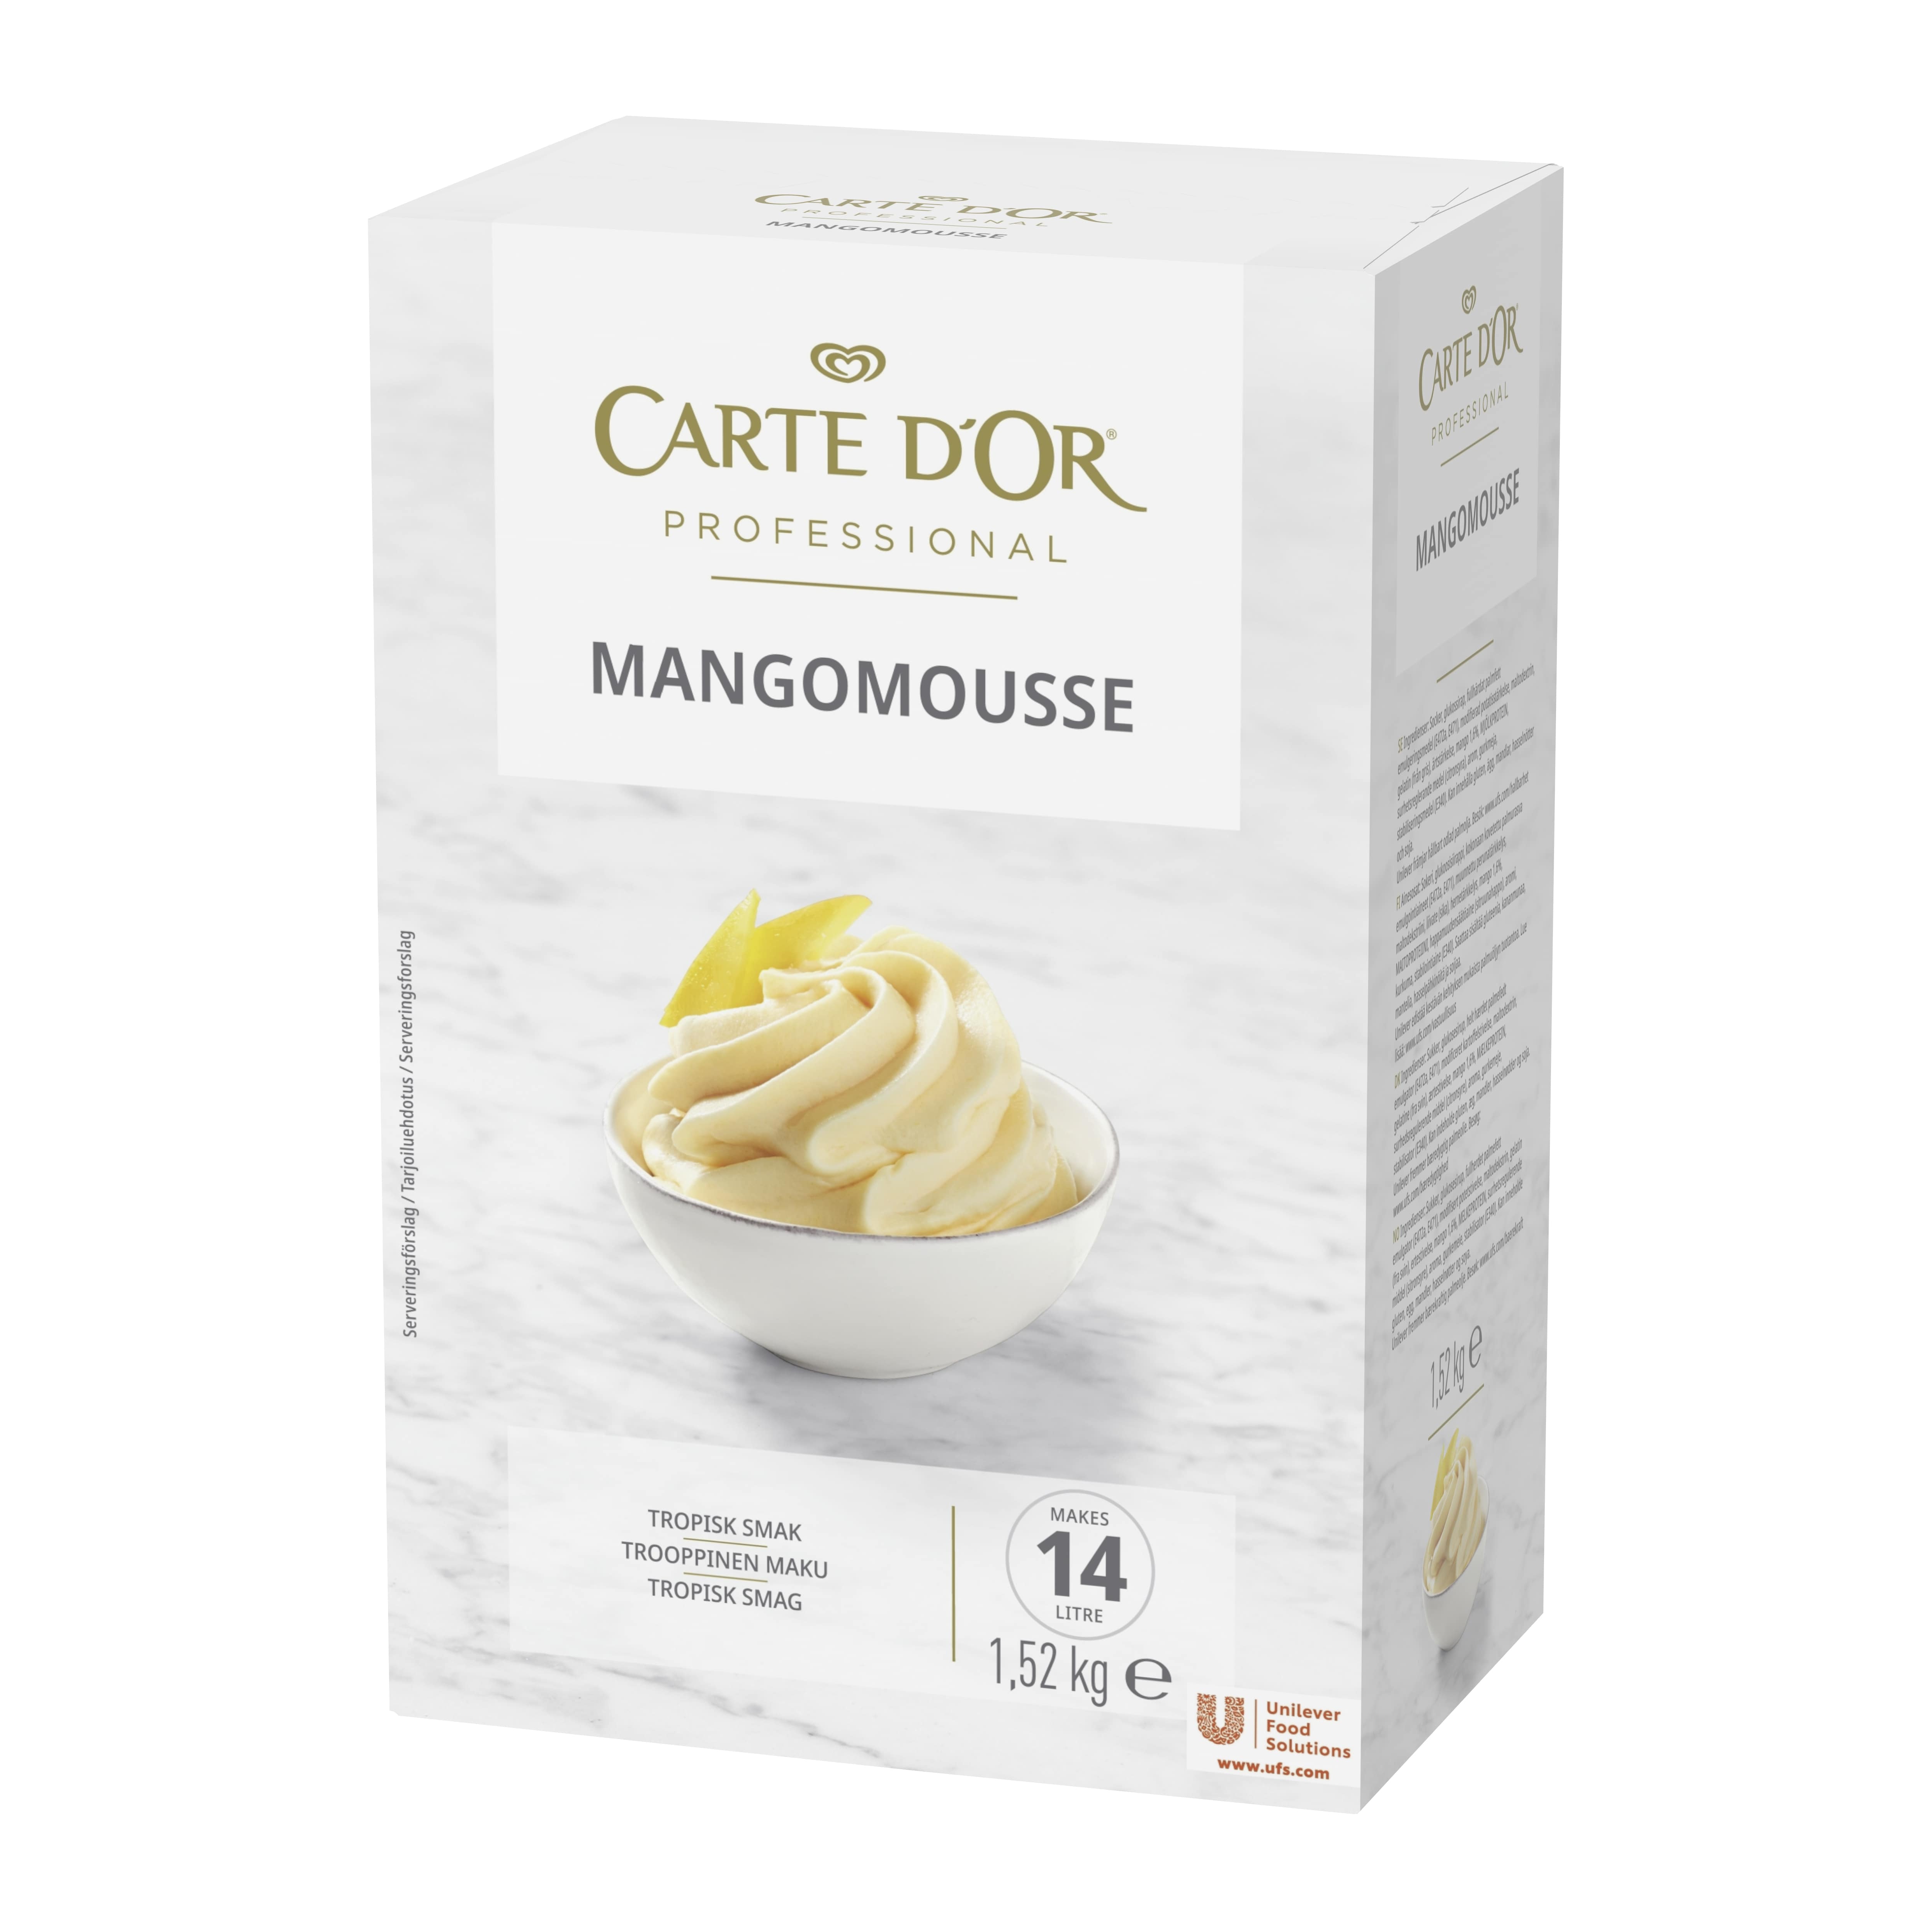 Carte d'Or Mangomousse 1,52 kg / 14 L - 